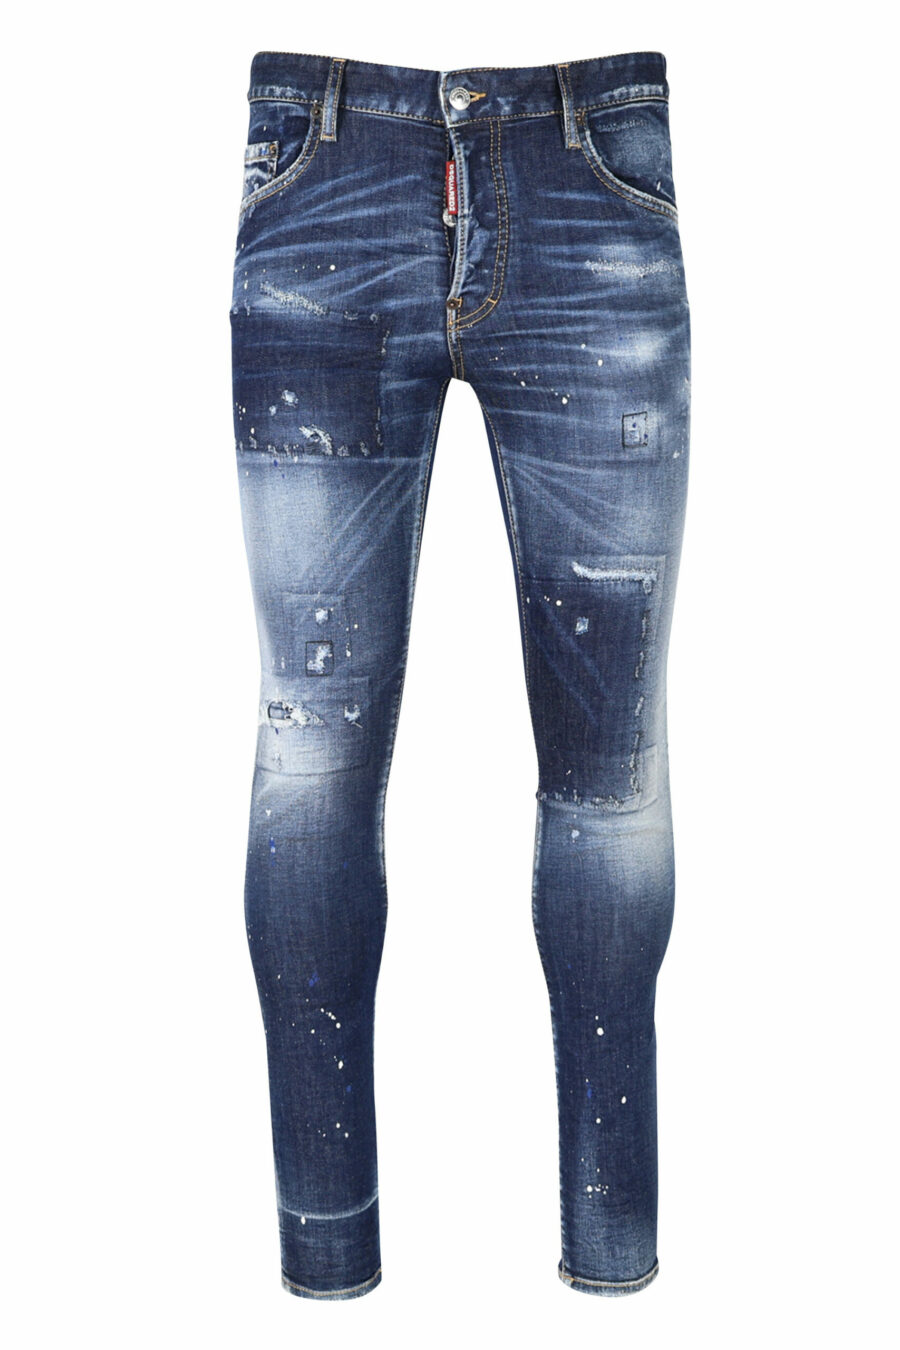 Pantalón vaquero "super twinky jean" azul con parche y desgastado - 8054148104863 scaled